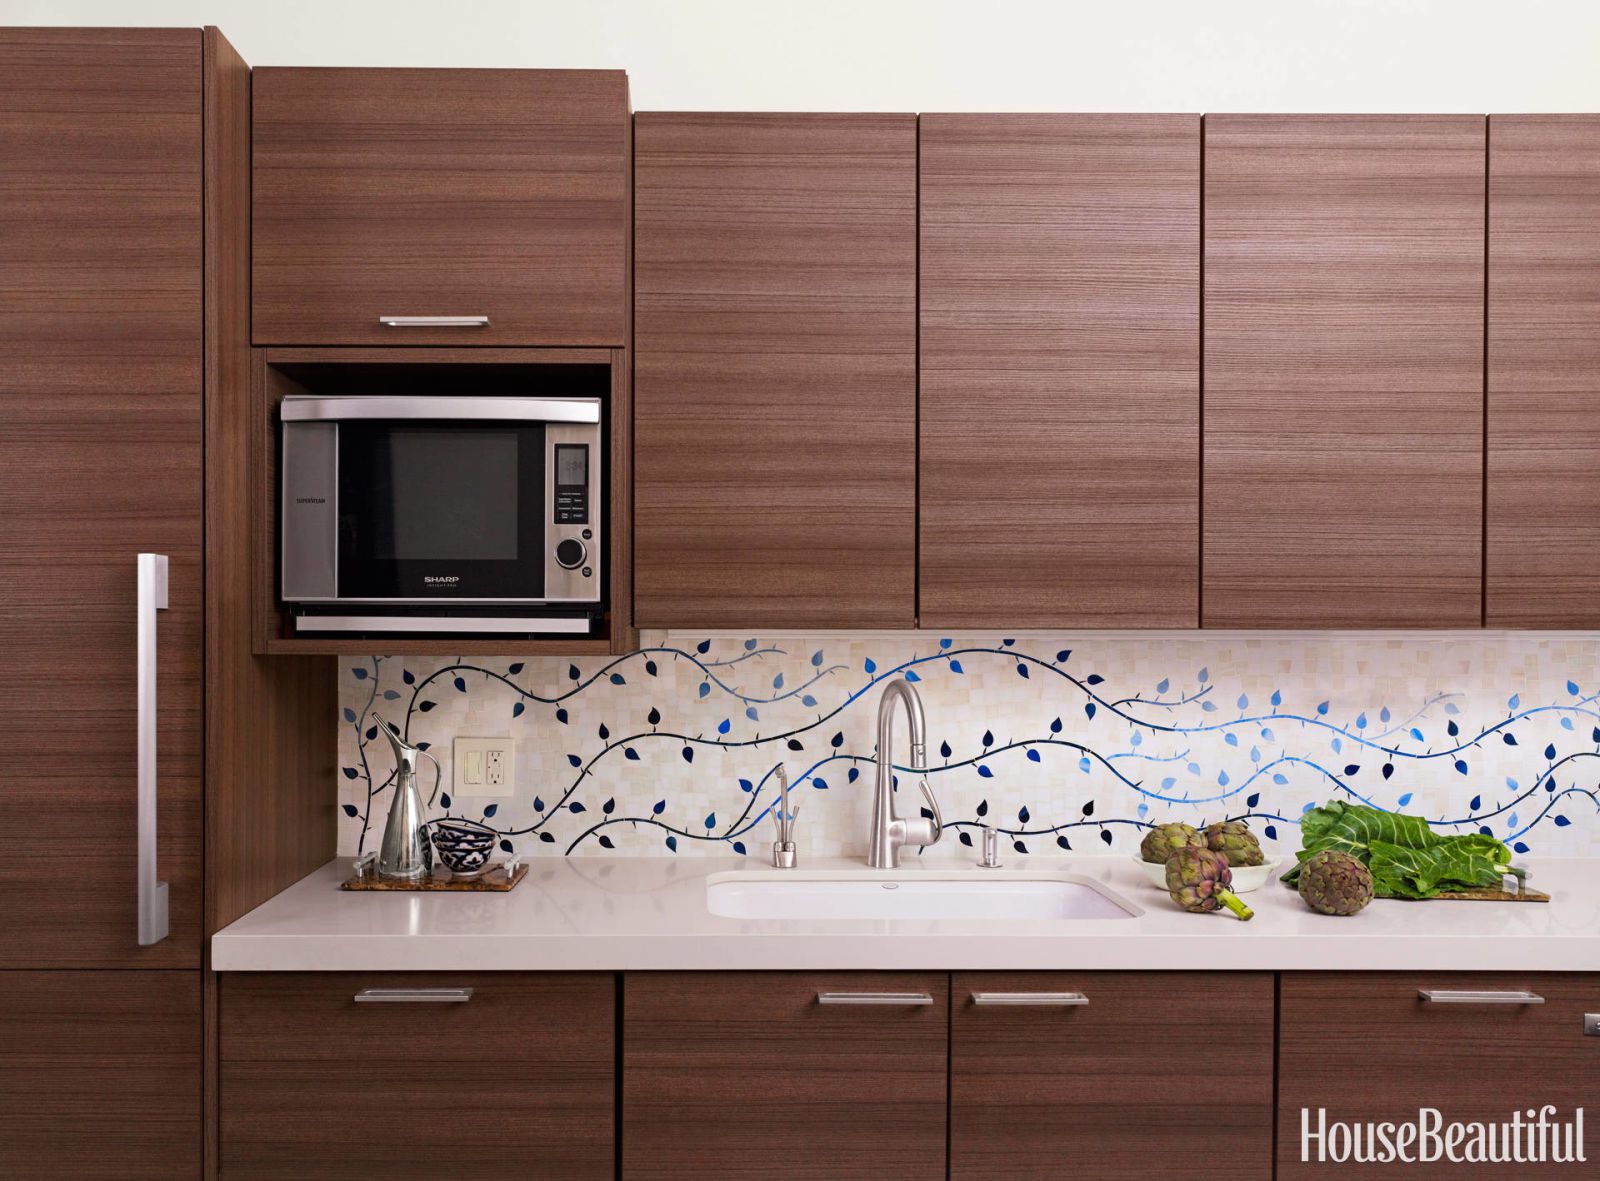 kitchen tiles design best kitchen backsplash ideas - tile designs for kitchen backsplashes MDNIWJD